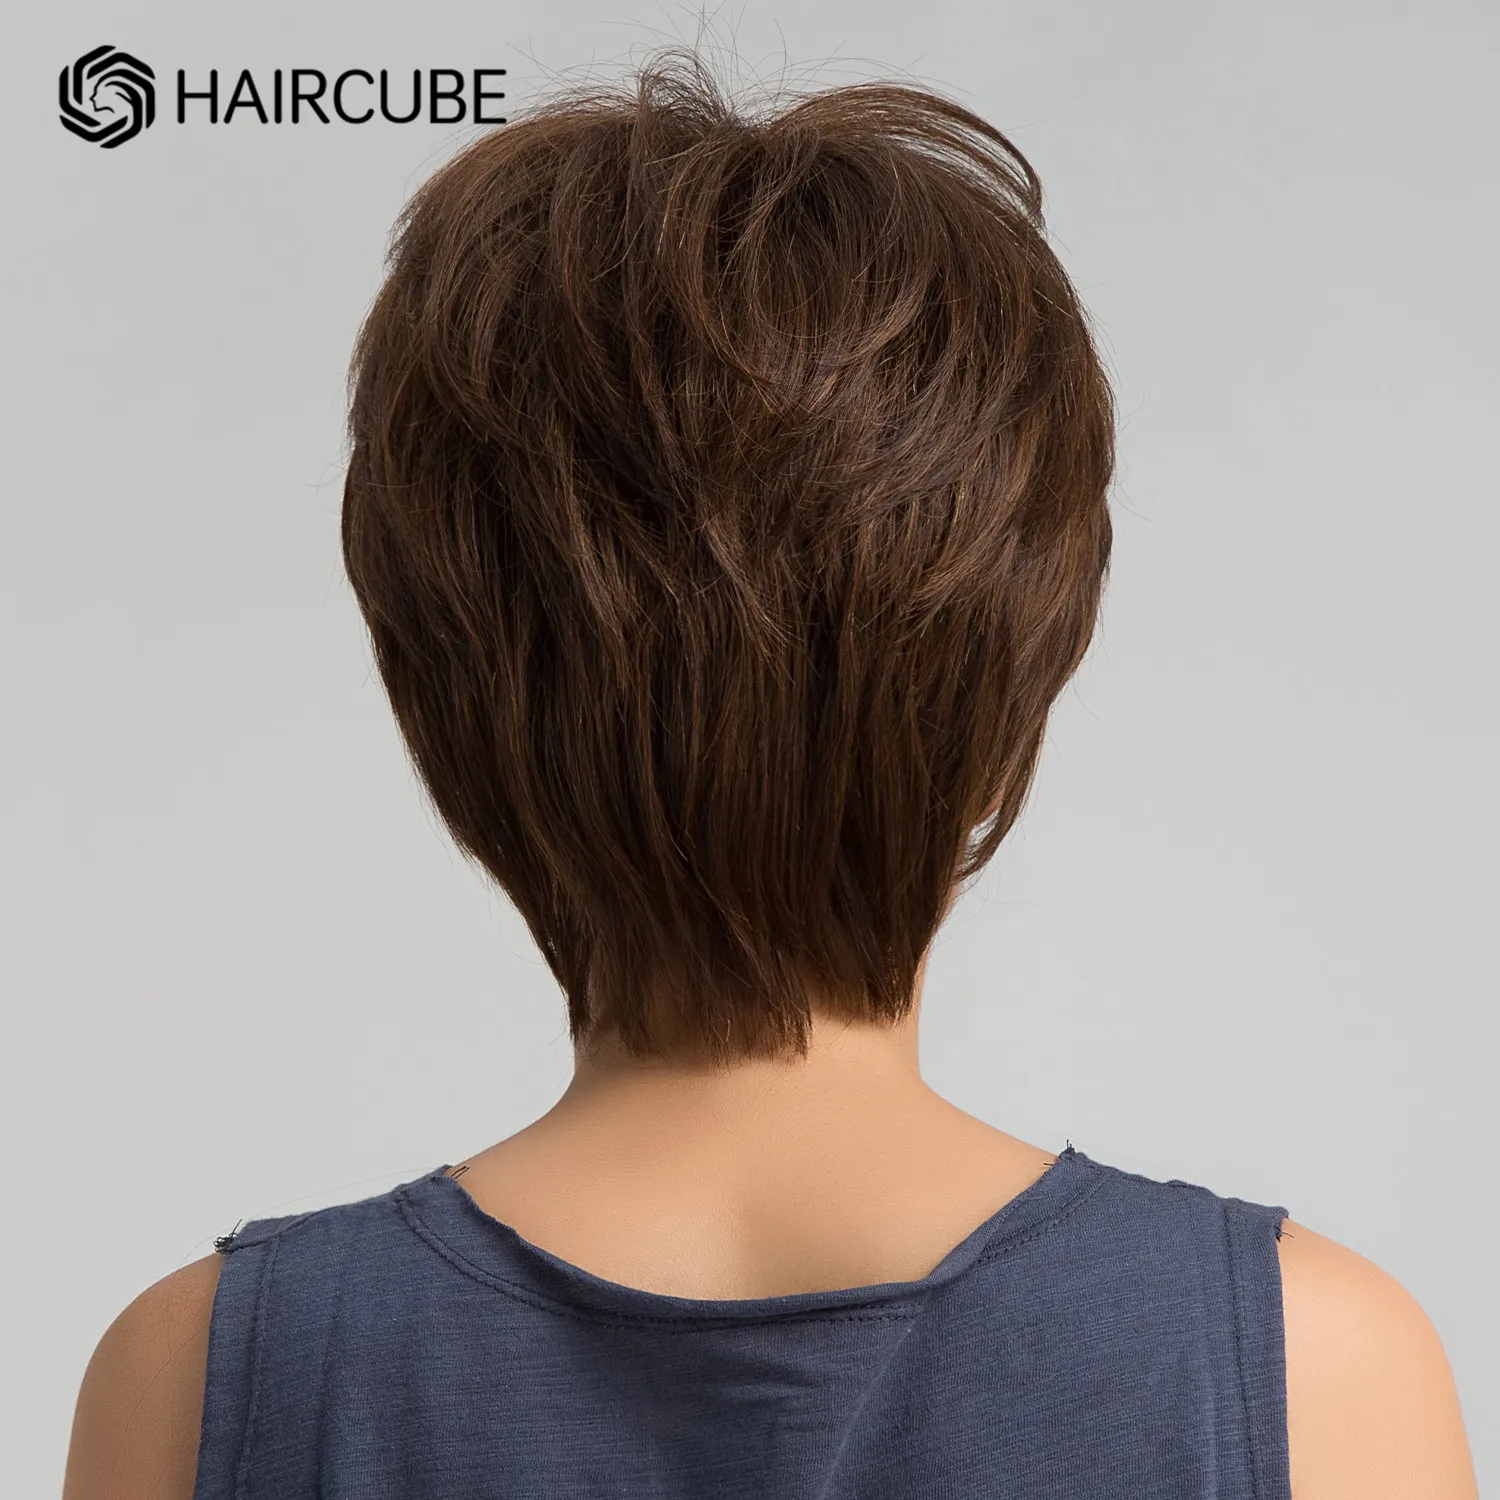 HAIRCUBE-Peluca de cabello humano para mujer, postizo corto con flequillo, corte Pixie en capas, color marrón Chocolate, Natural, suave, resistente al calor